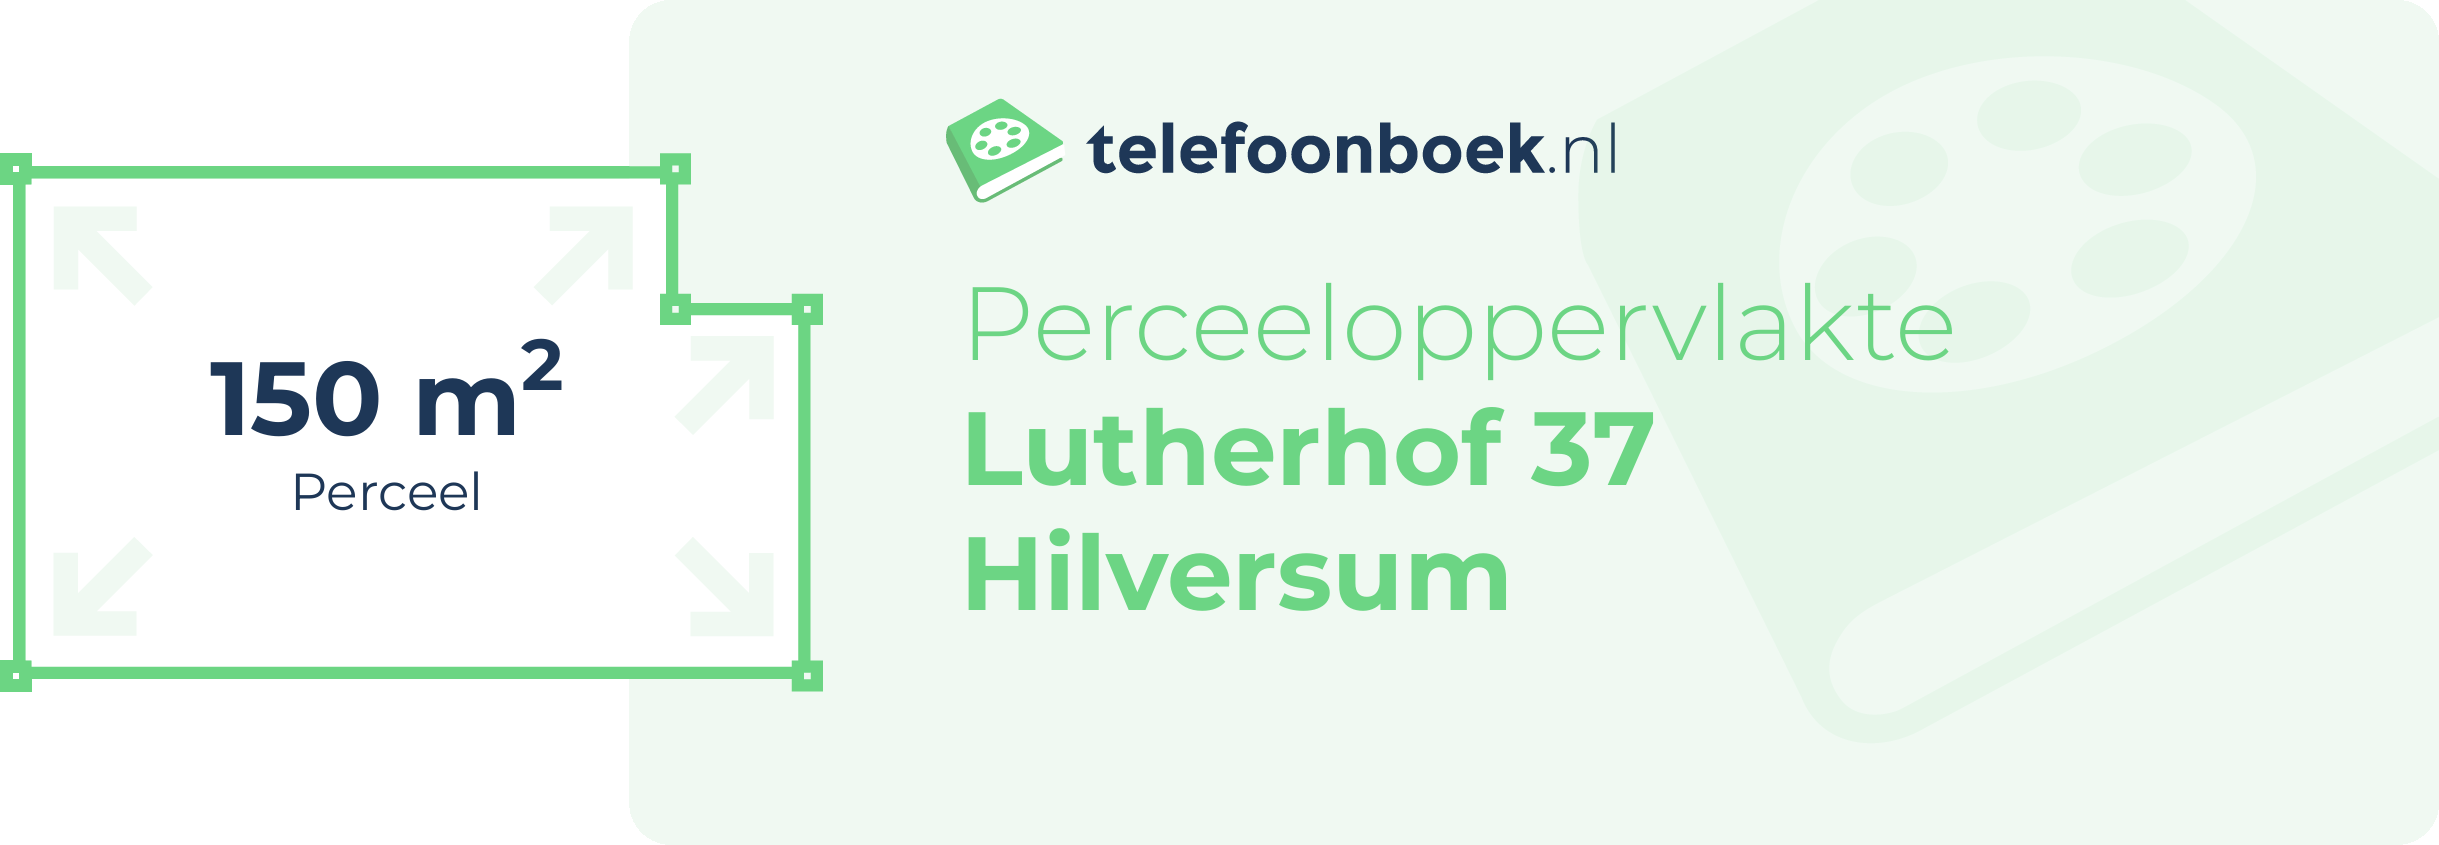 Perceeloppervlakte Lutherhof 37 Hilversum